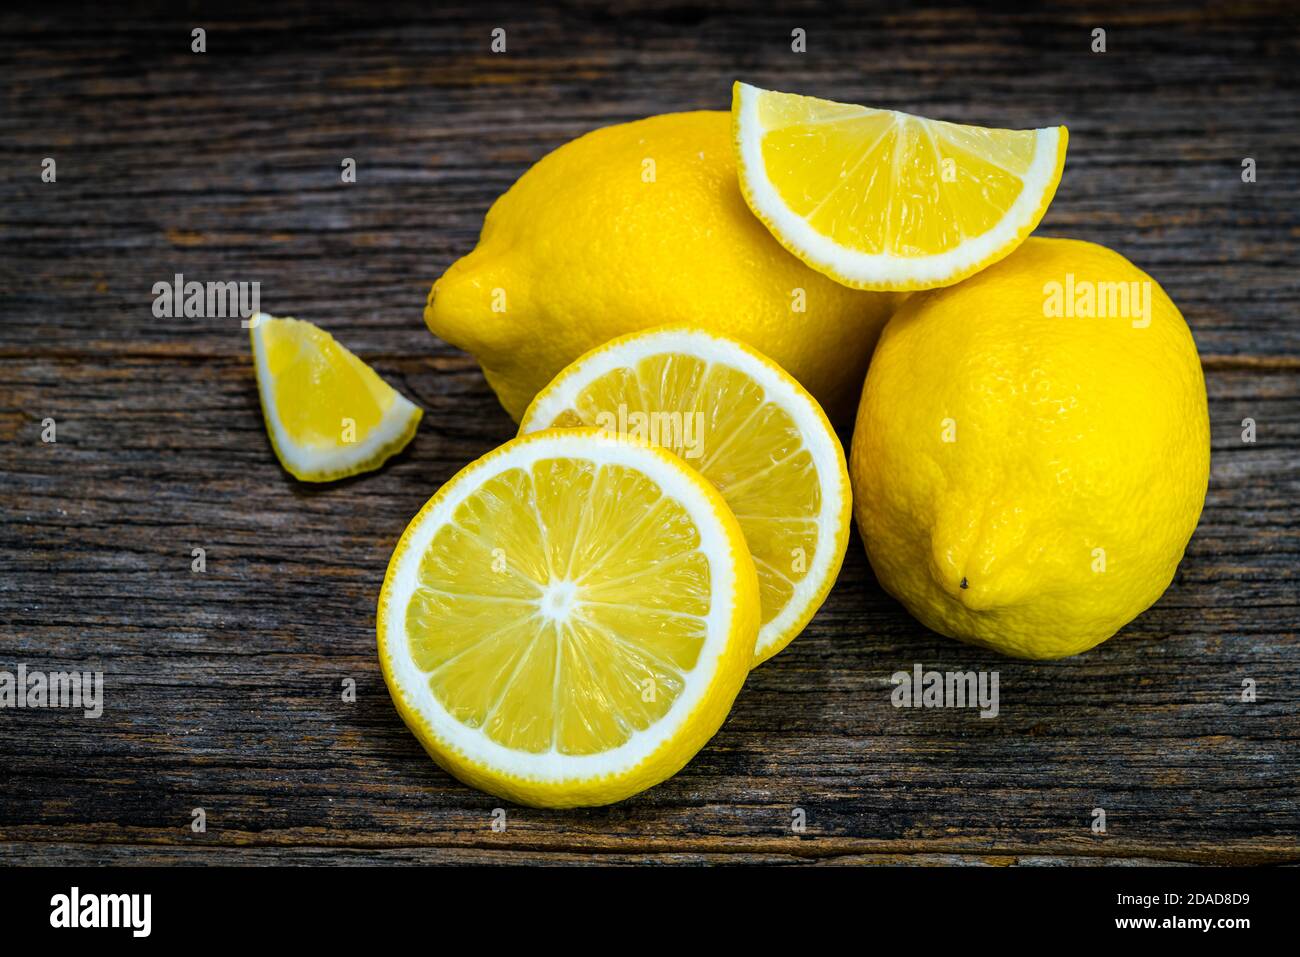 Gruppo di frutta fresca gialla al limone su fondo di legno Foto Stock